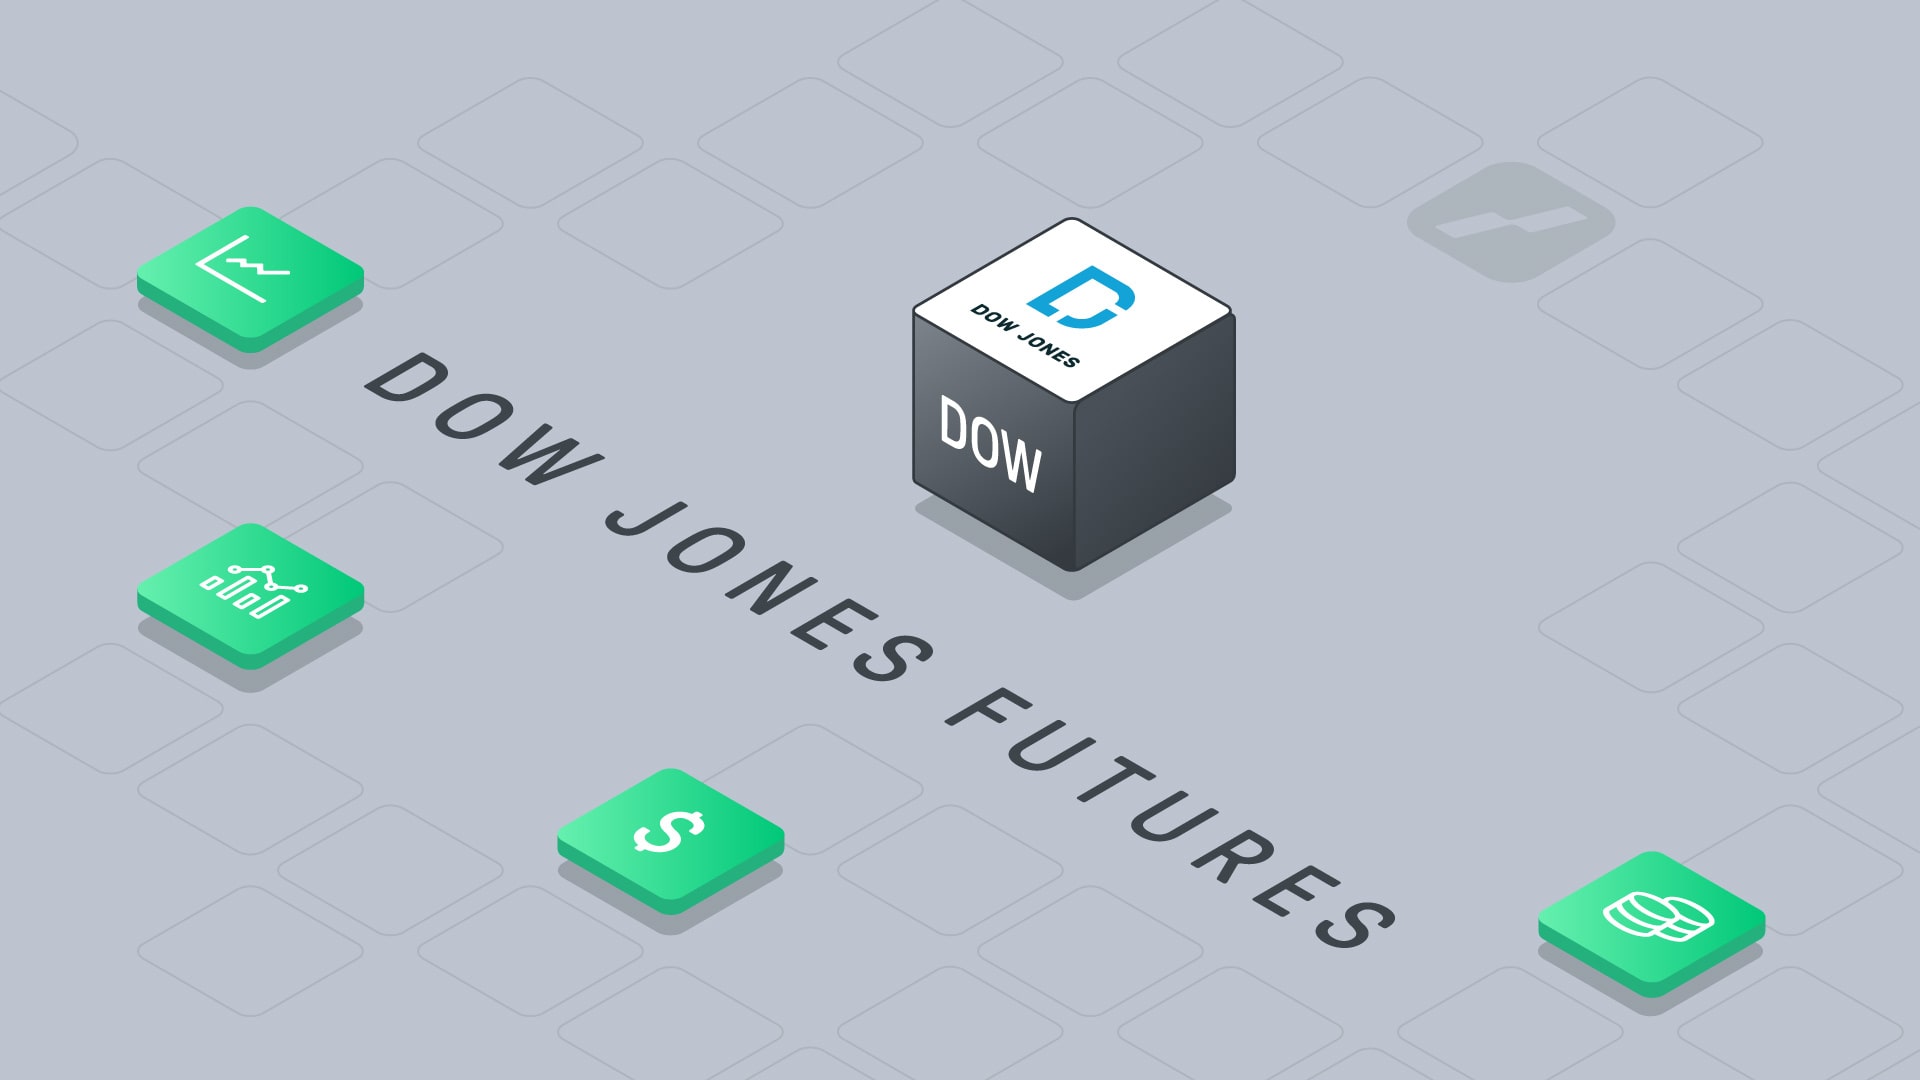 dow jones futures ym - ym dow jones - featured image